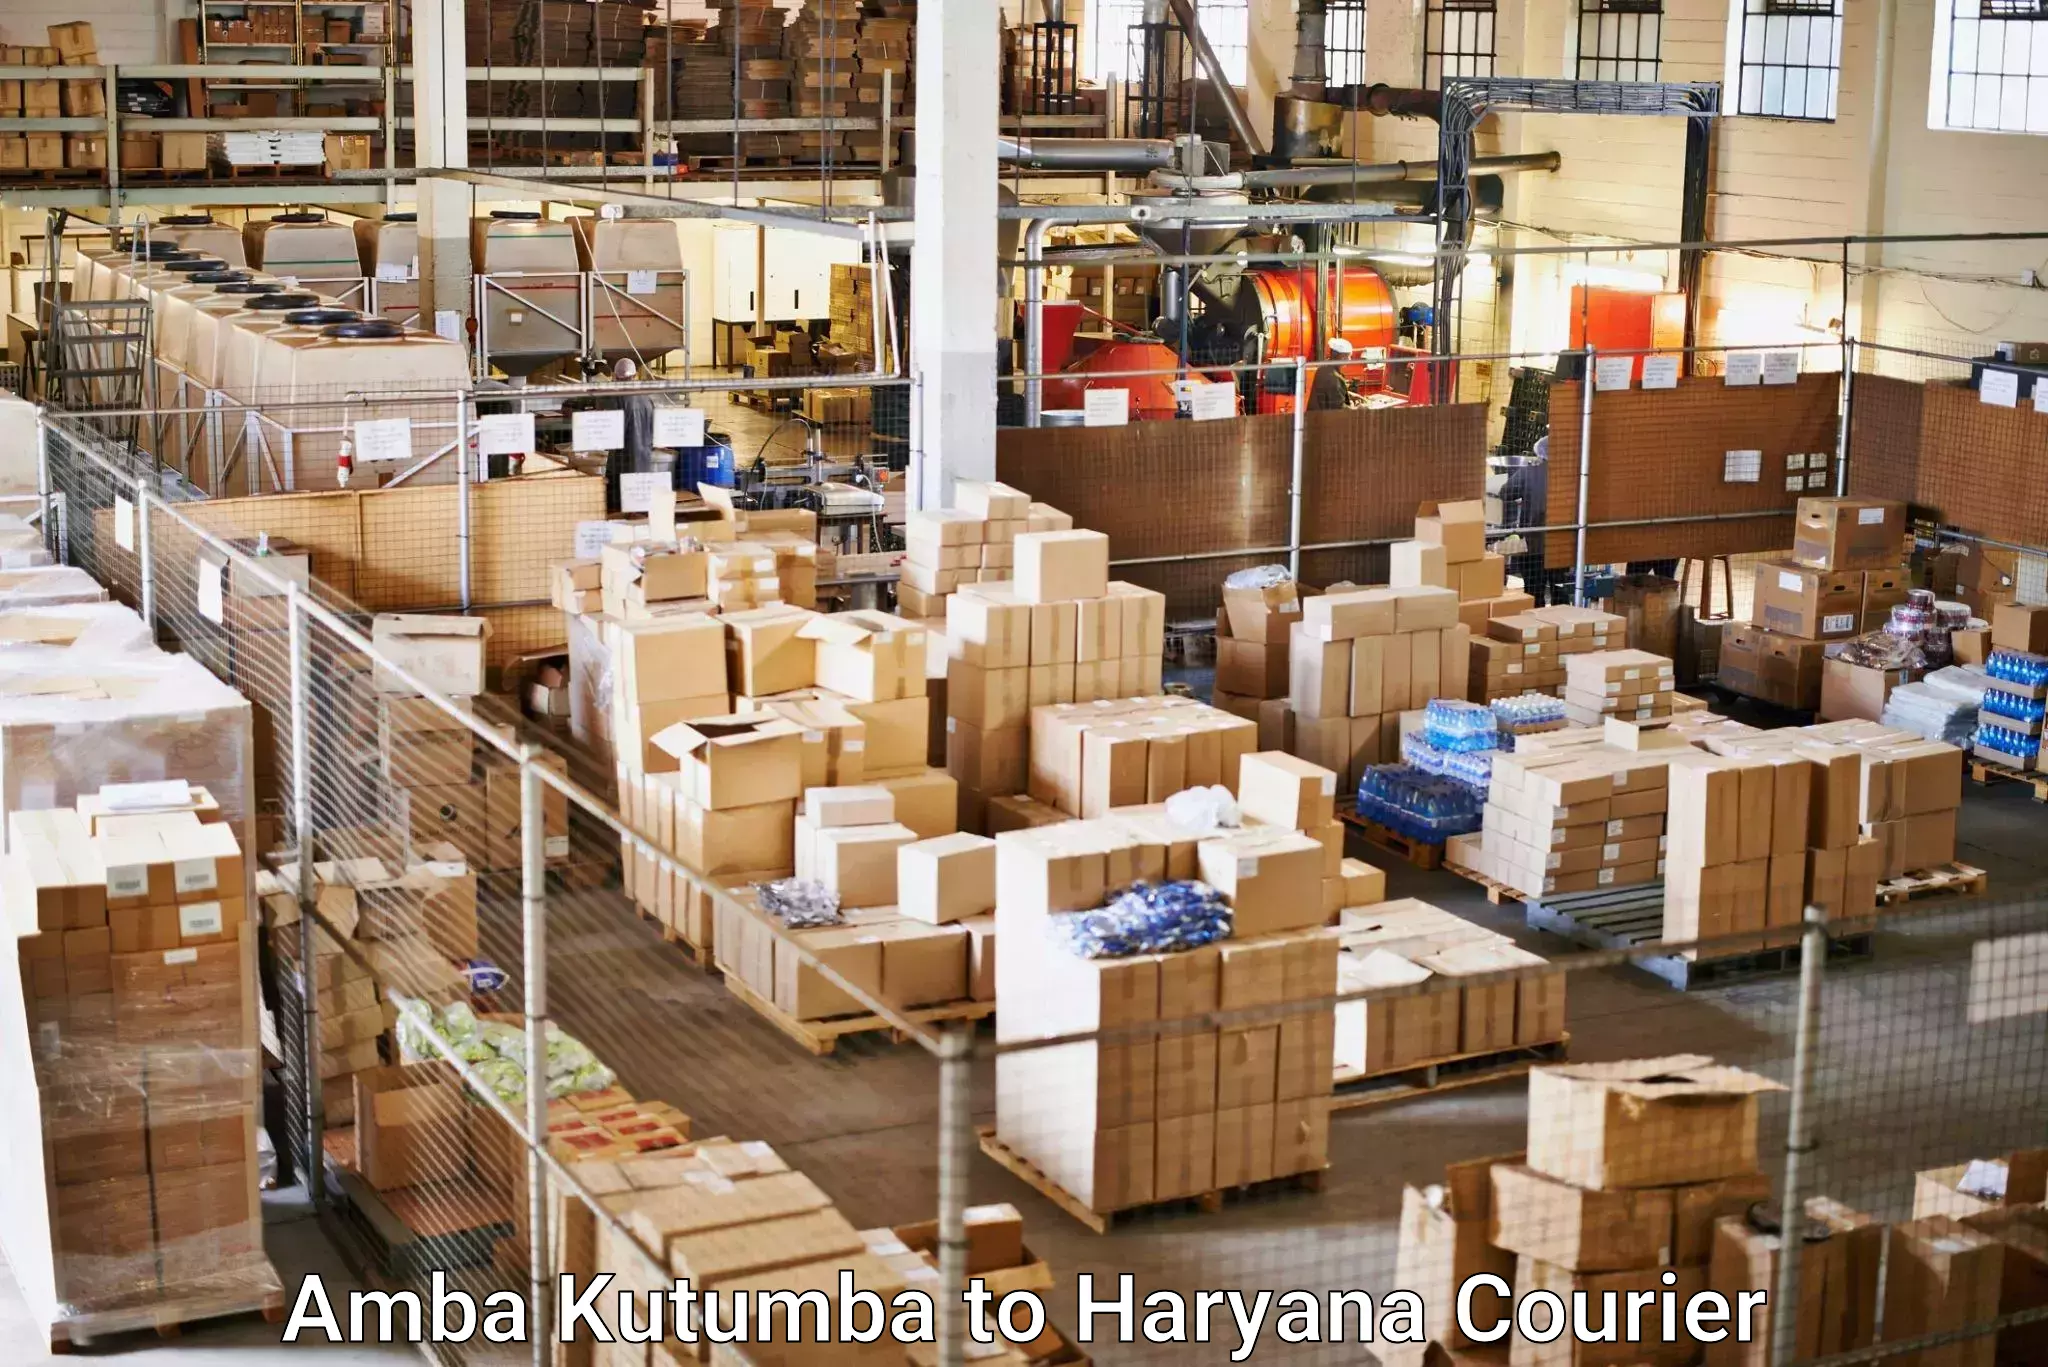 24/7 courier service Amba Kutumba to Haryana